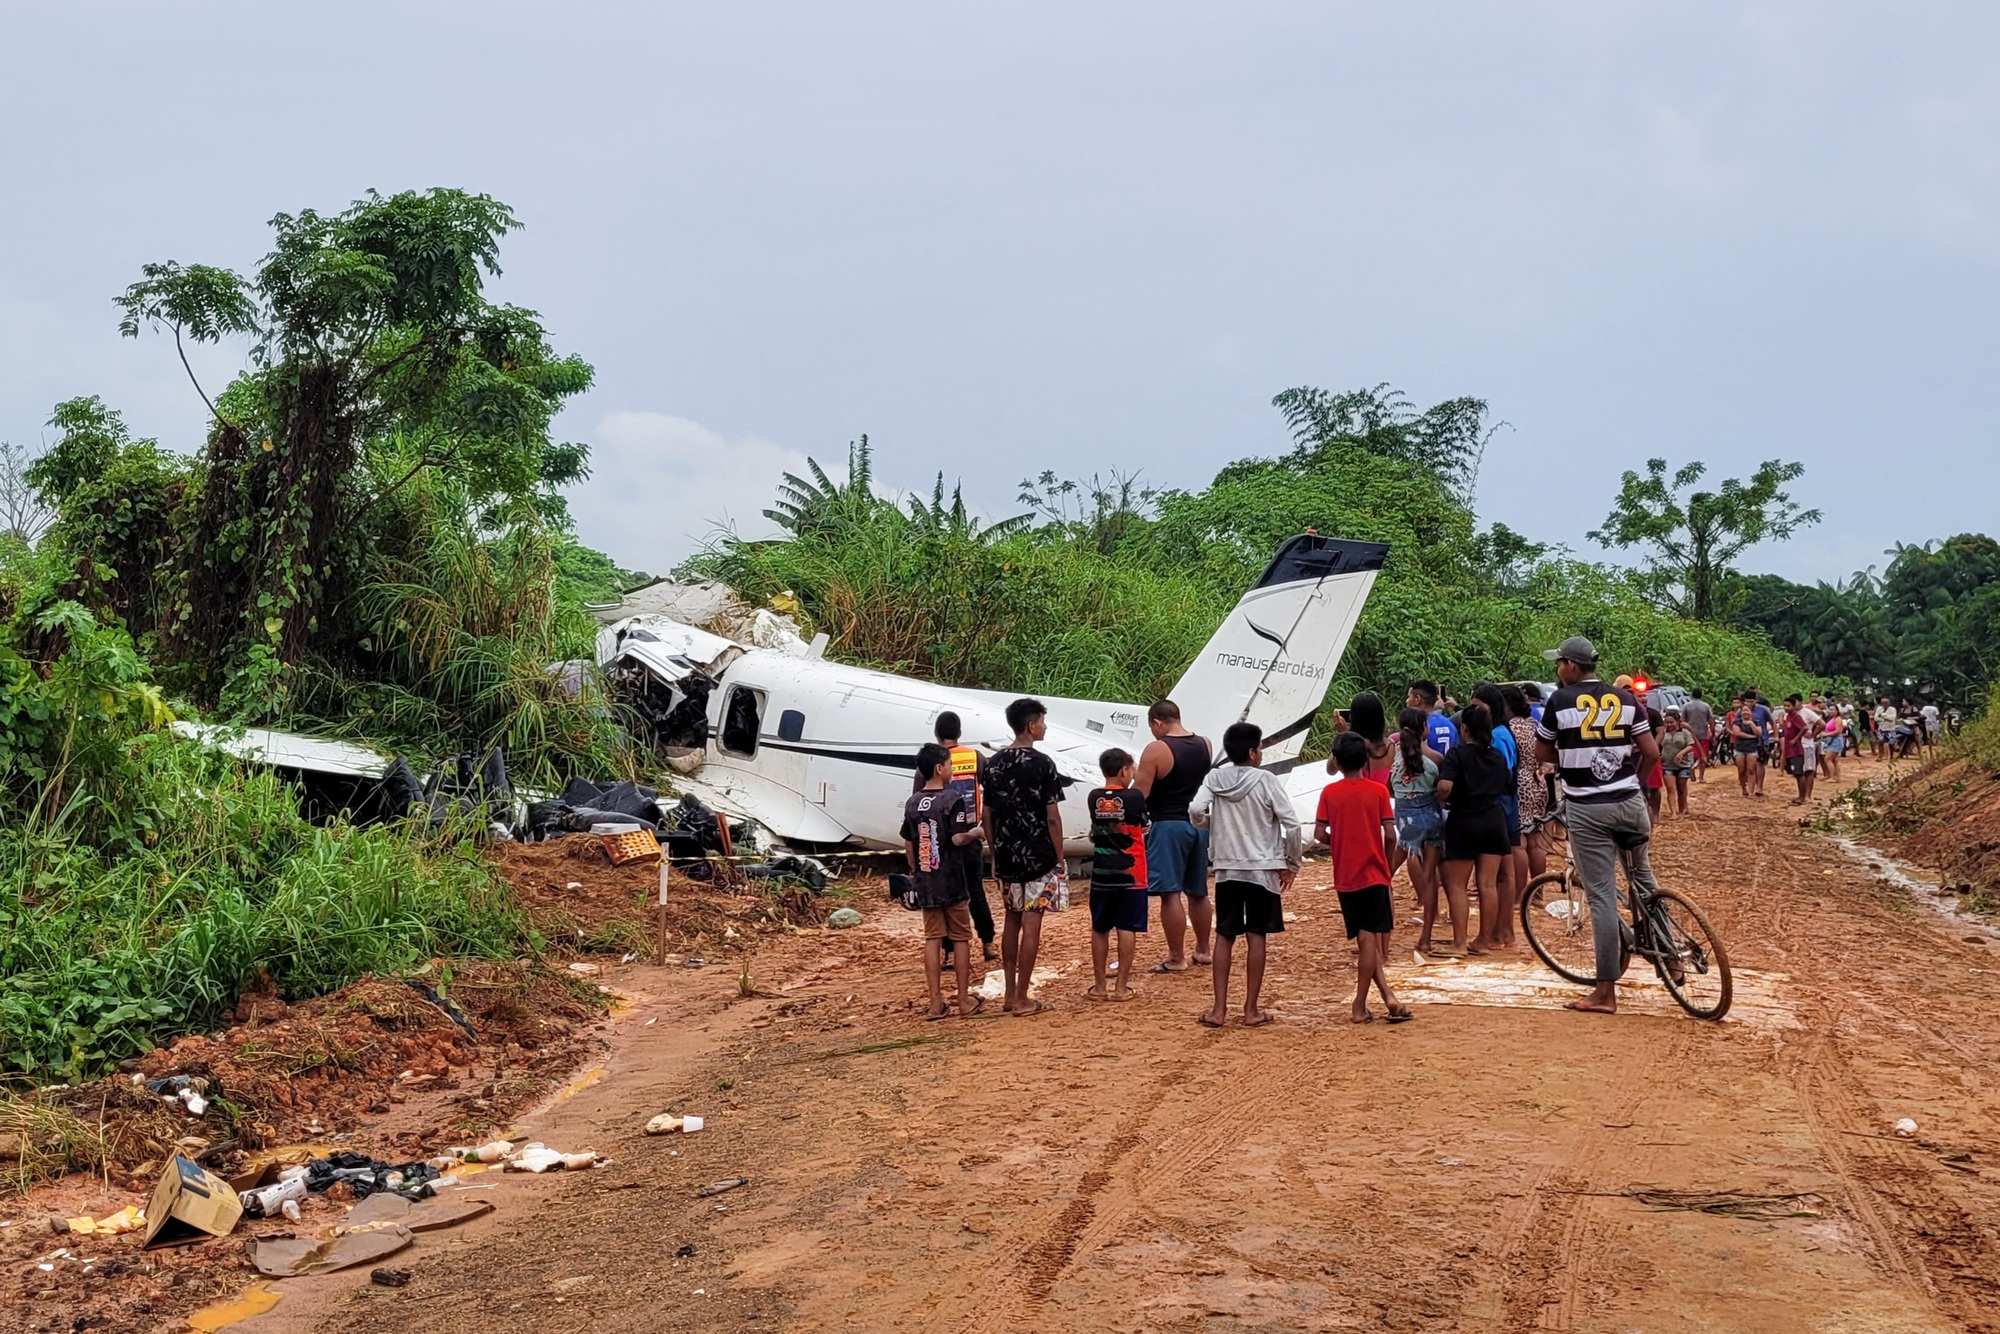 Khoảnh khắc cuối của chiếc máy bay Brazil trước khi gặp tai nạn kinh hoàng khiến toàn bộ hành khách và phi công thiệt mạng - Ảnh 5.